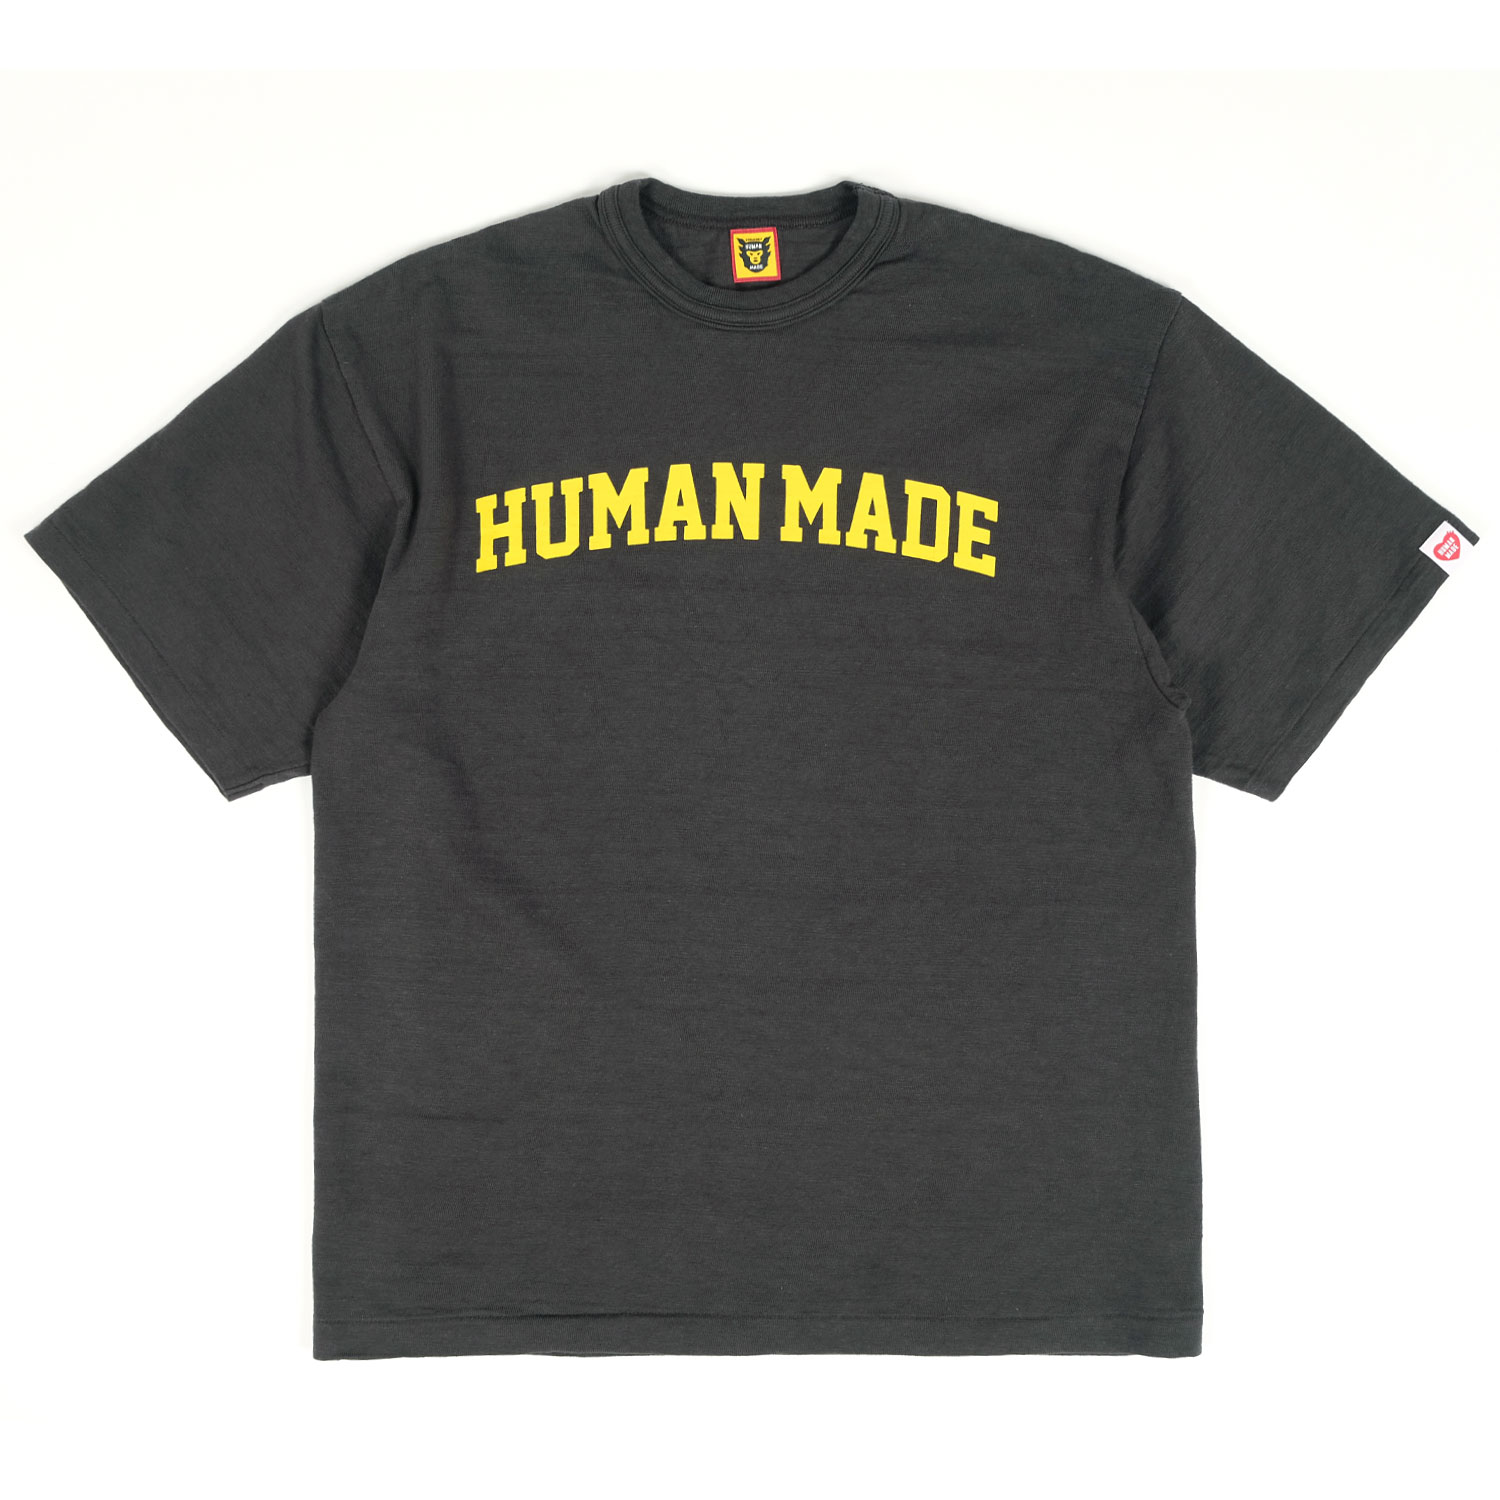 Human Made Graphic T-Shirt 06 | FIRMAMENT - Berlin Renaissance